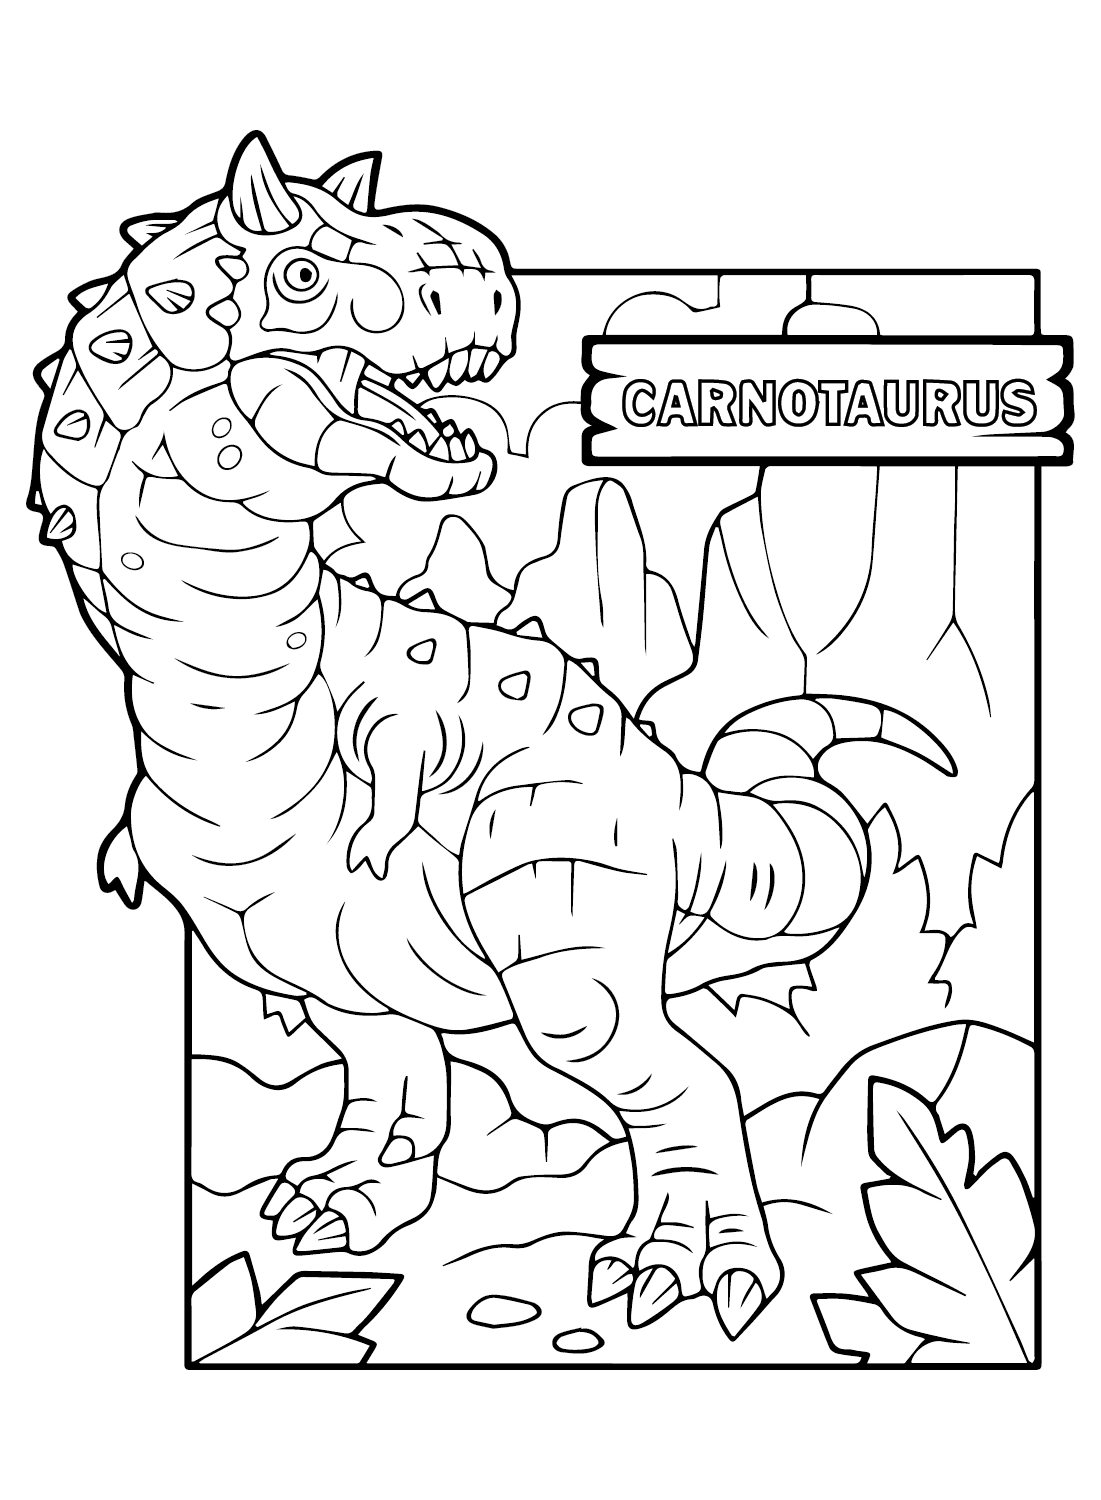 Carnotaurus-Malblatt für Kinder von Carnotaurus